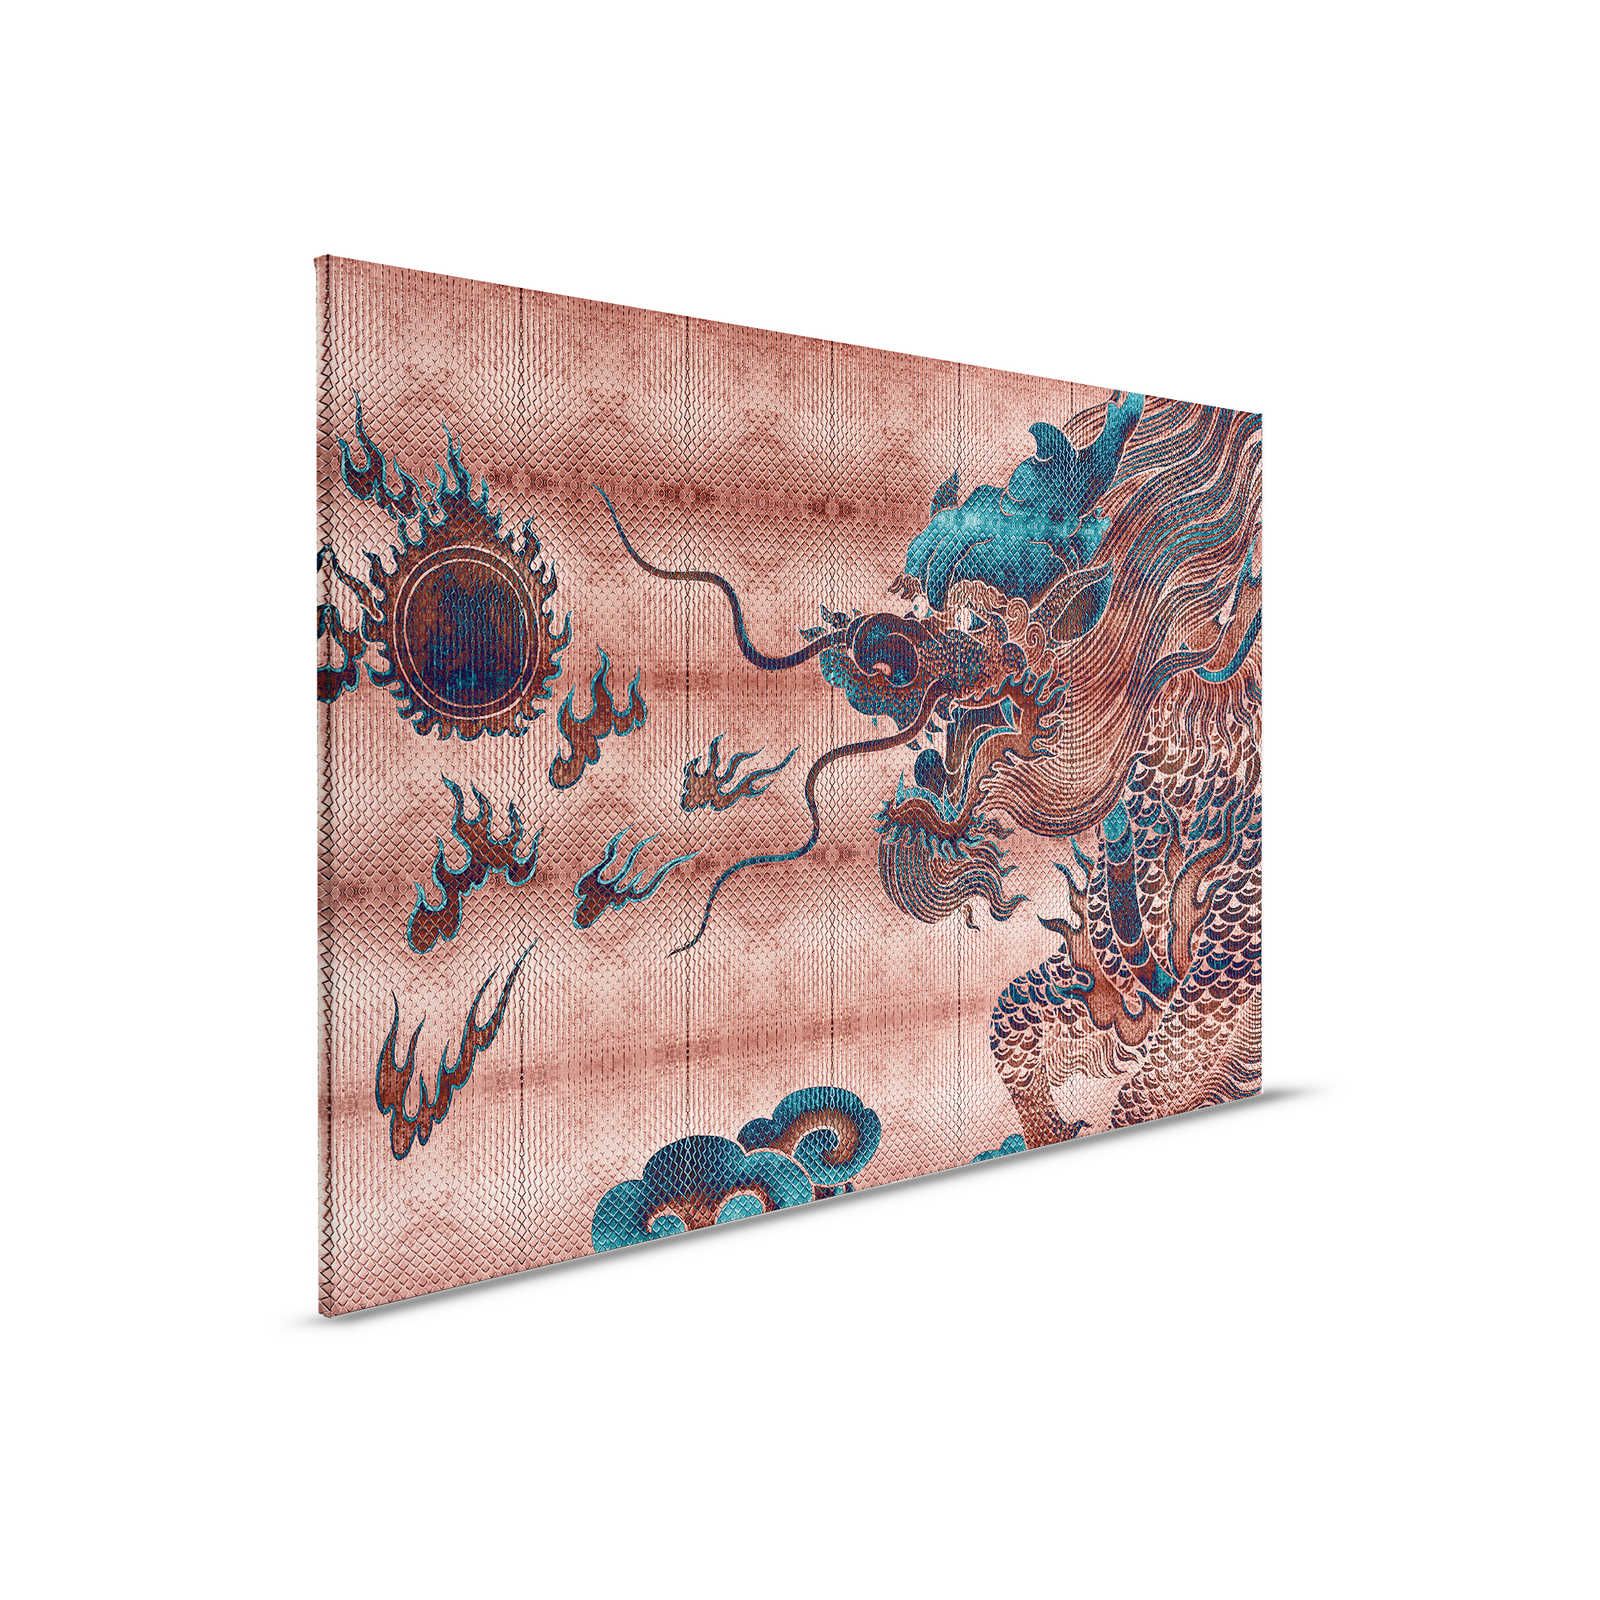 Shenzen 1 - Leinwandbild Drache Asian Syle mit Metallic Farben – 0,90 m x 0,60 m
